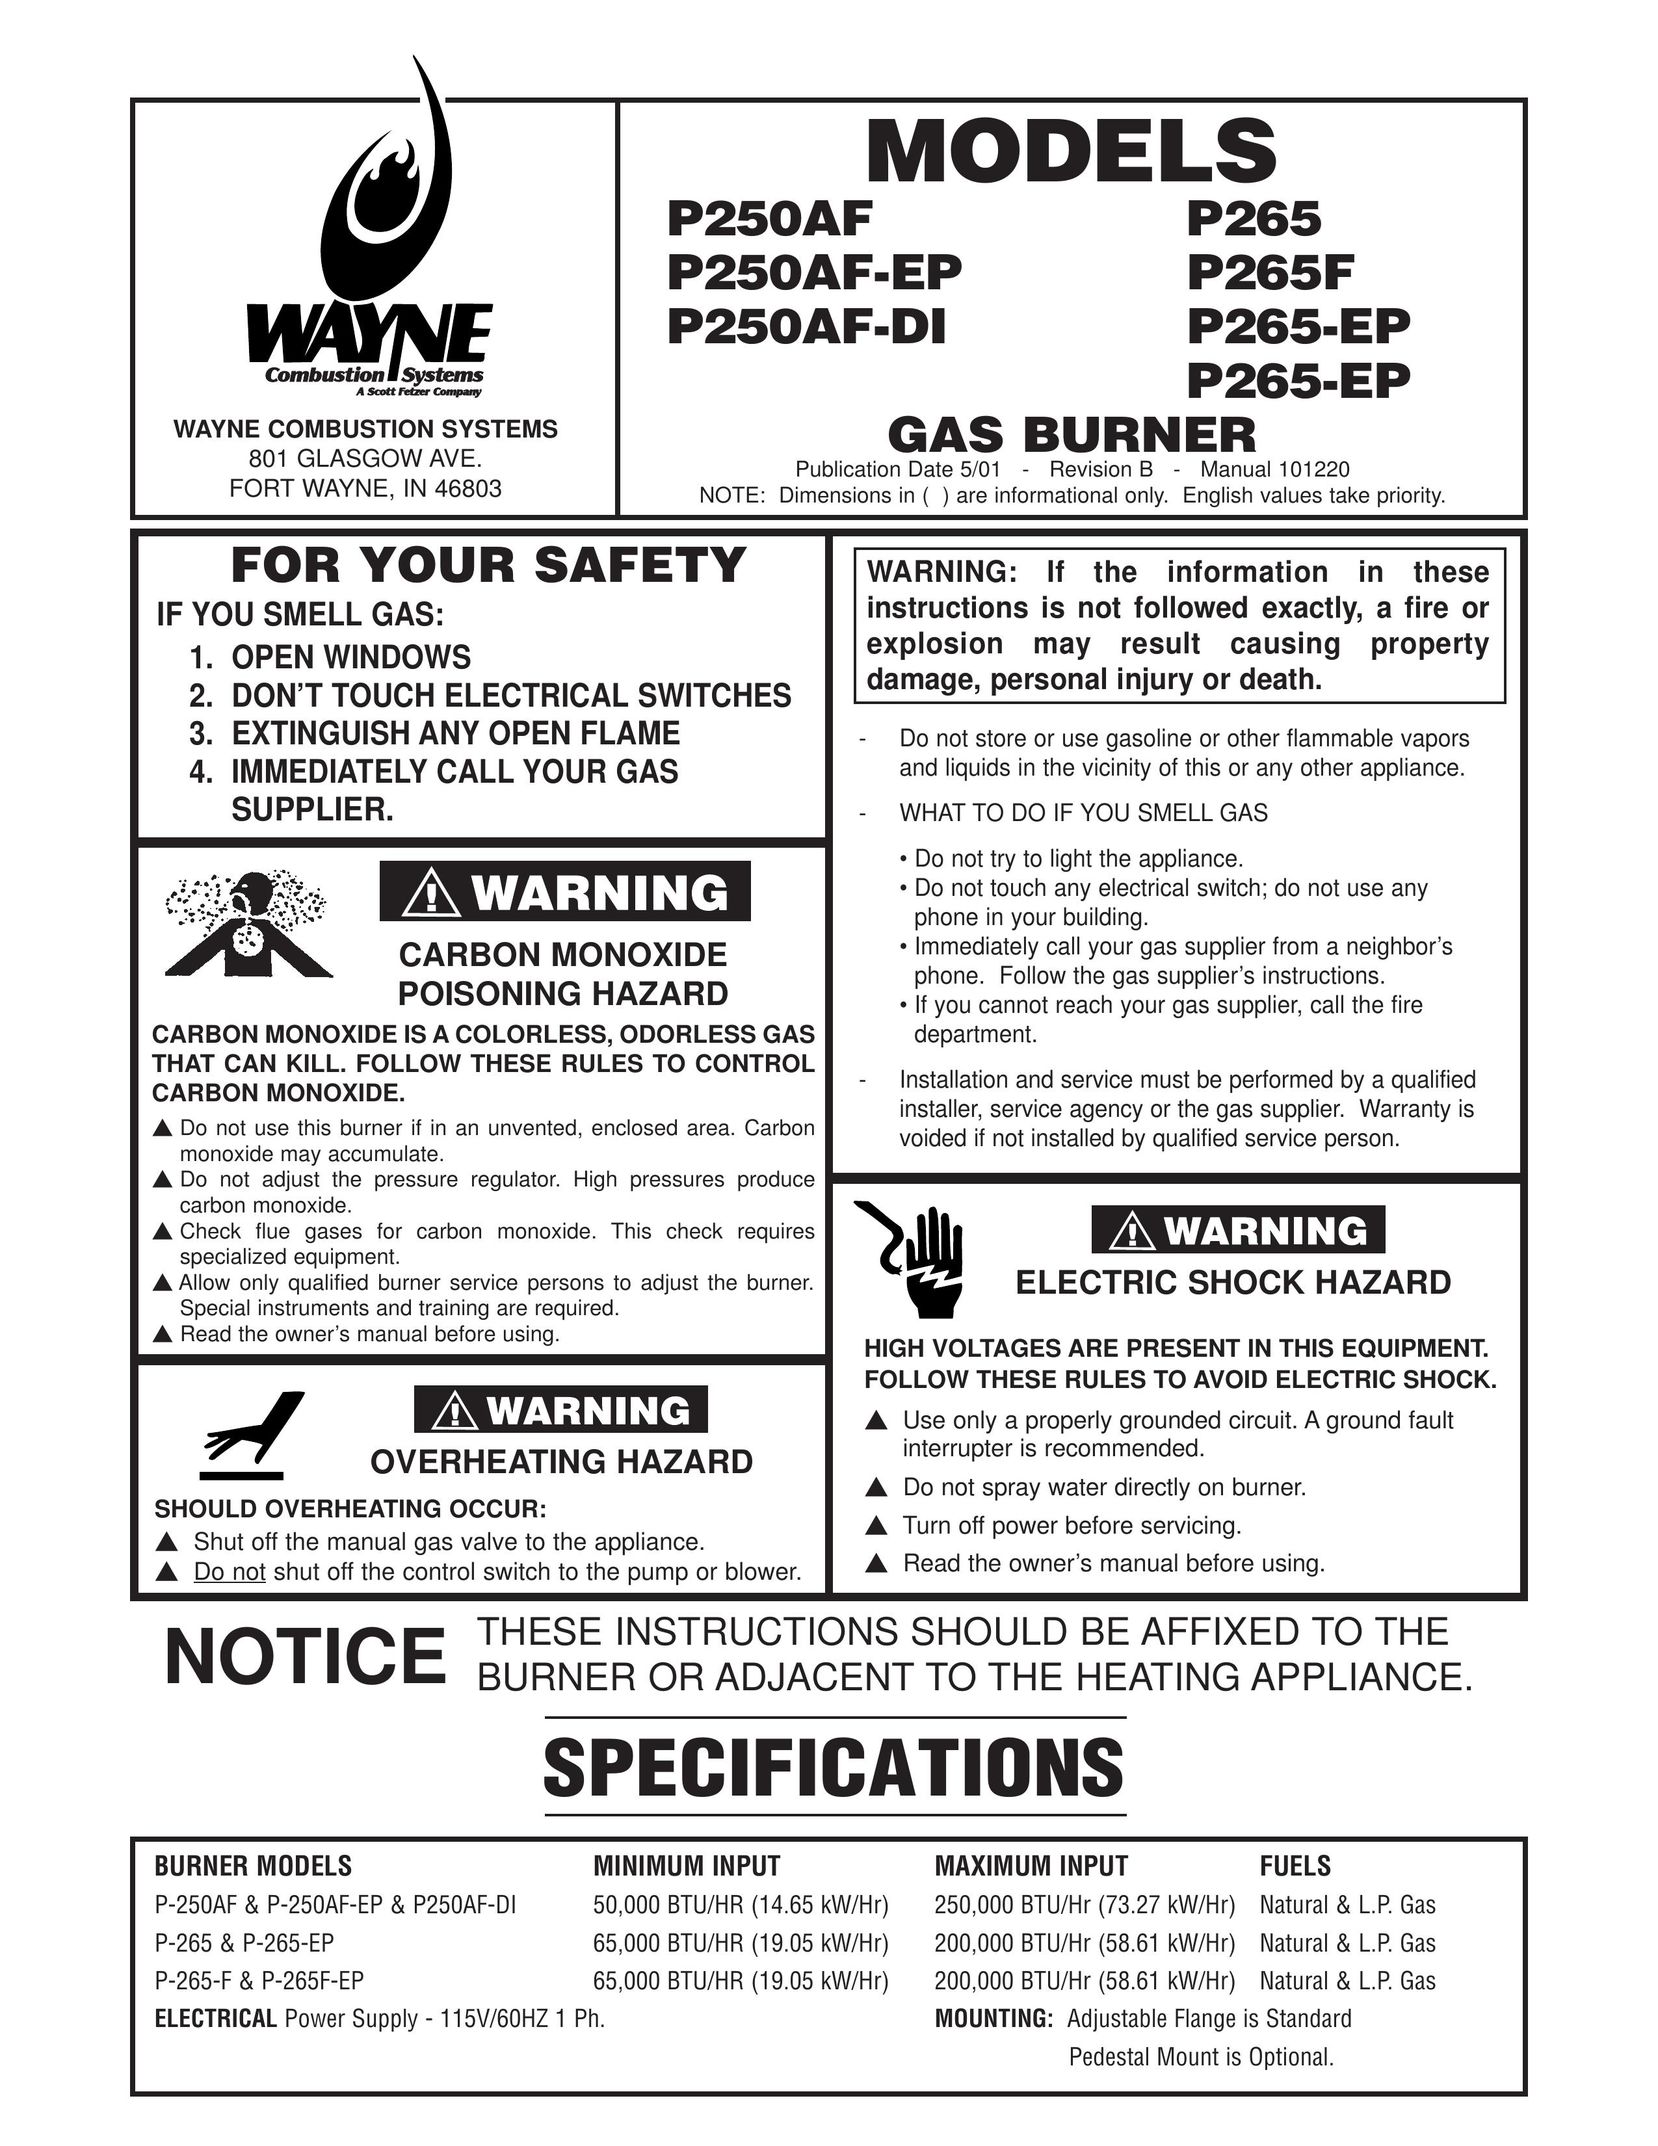 Wayne P265F Burner User Manual